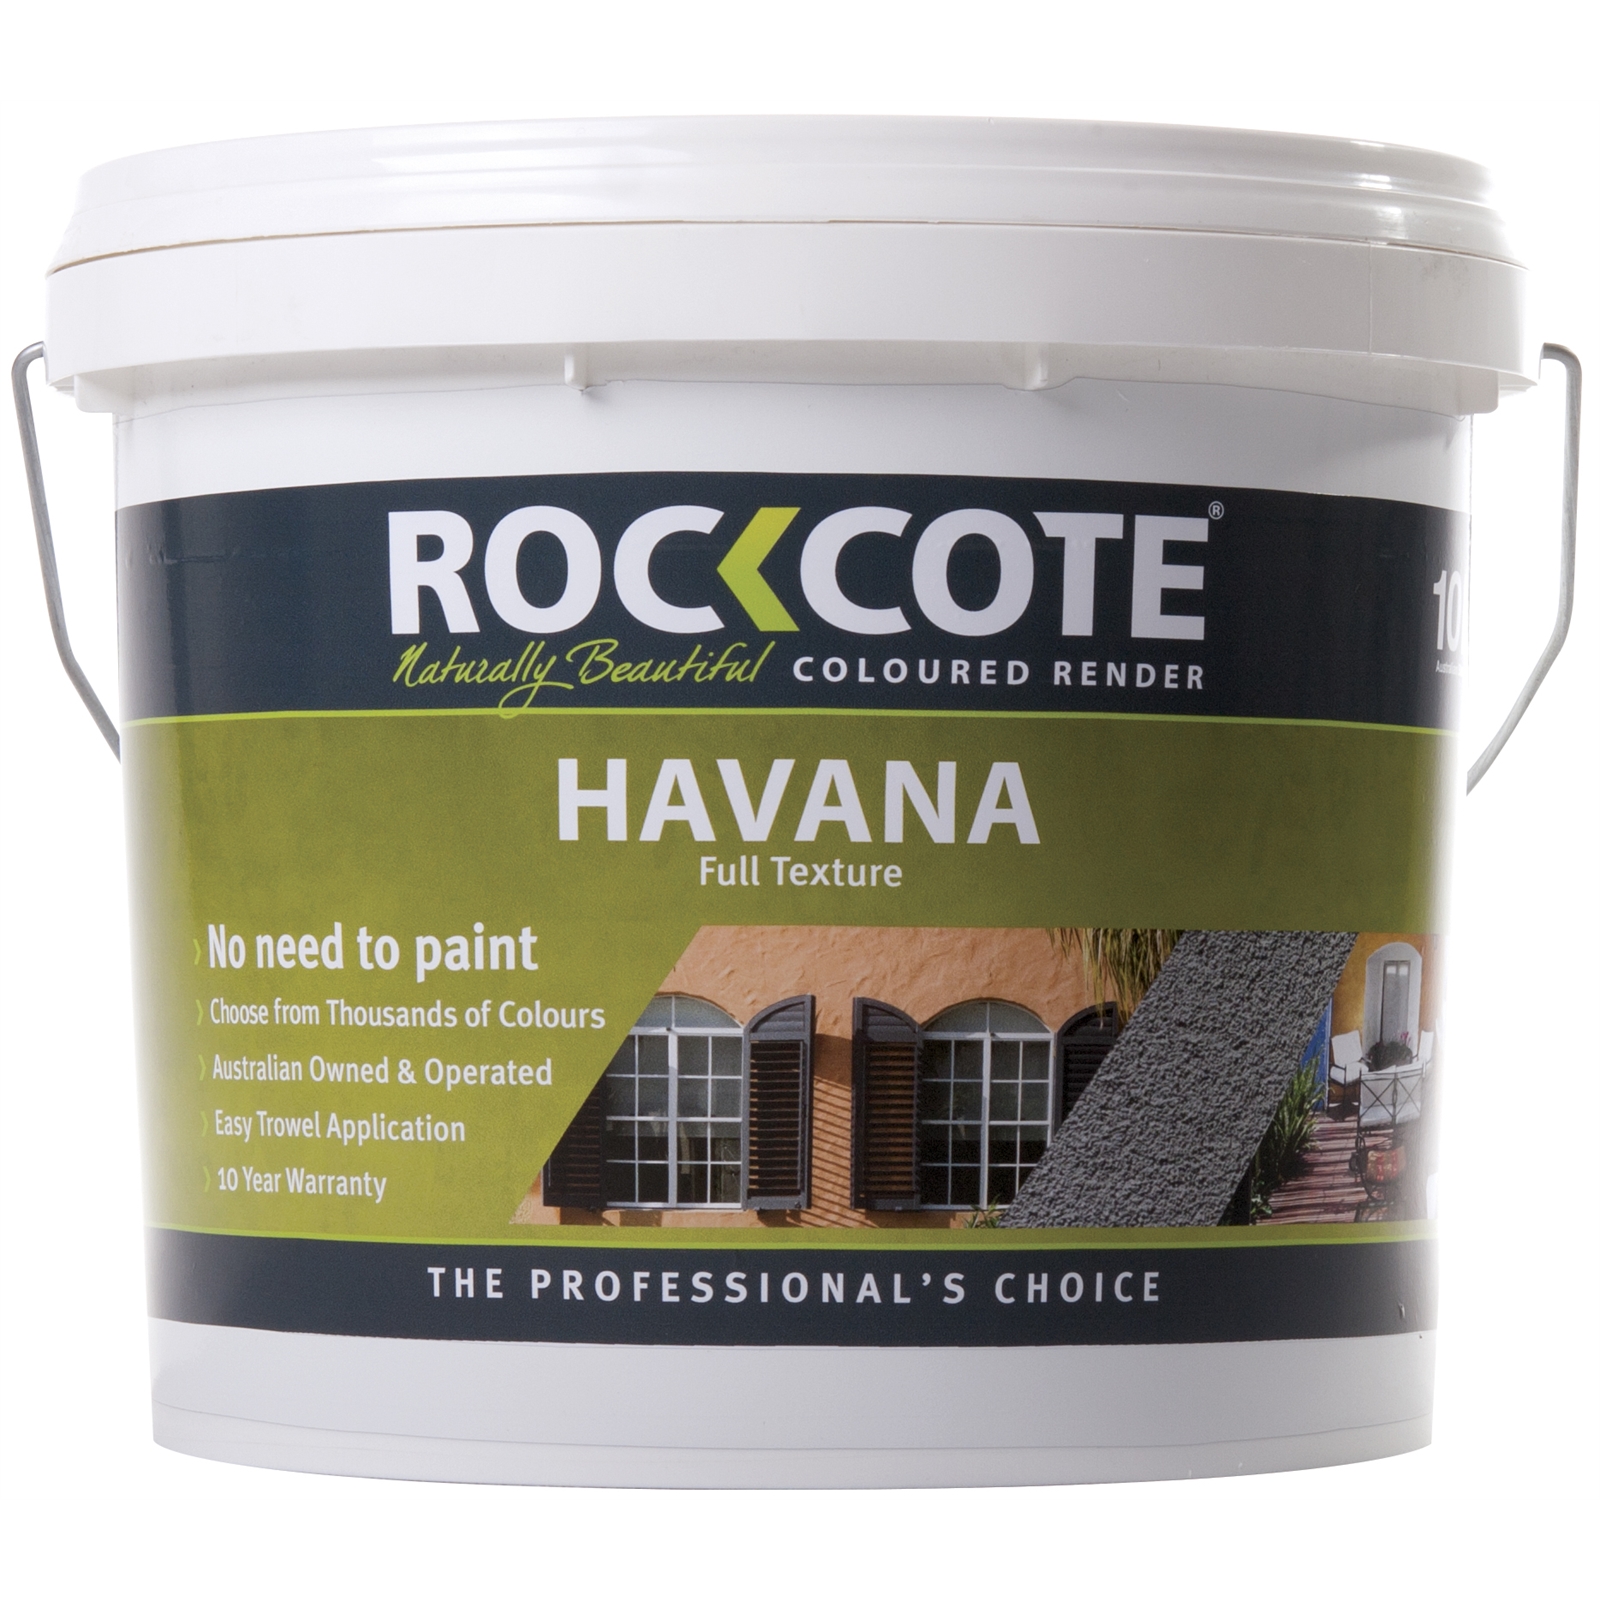 Rockcote 10L Havana Paperbark Texture Colored Render Exterior Paint